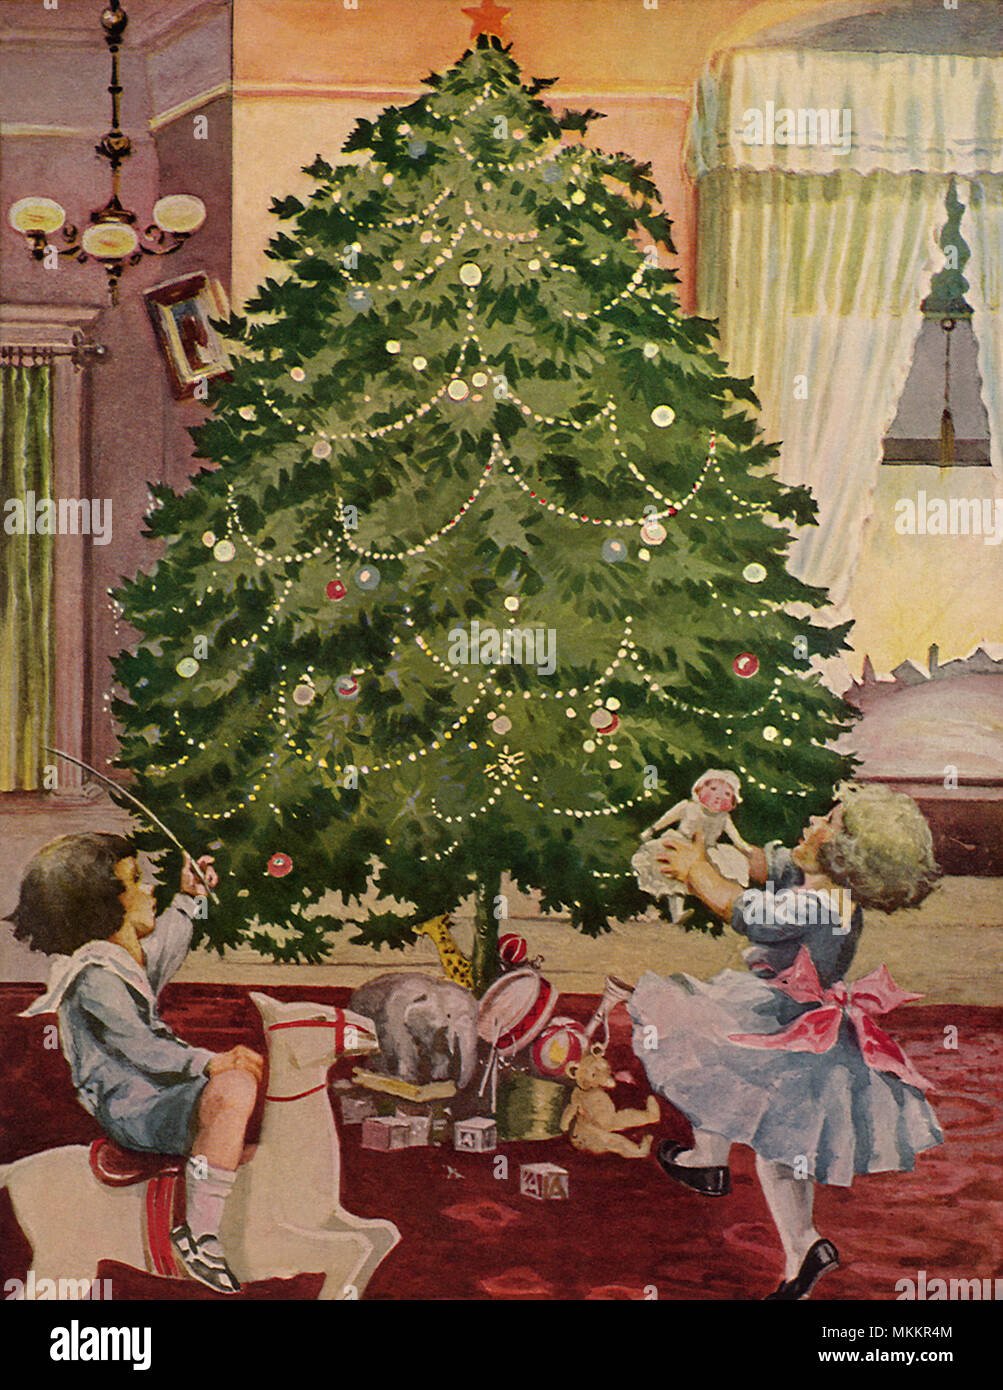 В старину на новогодних елках. Старинная Новогодняя елка. Дети наряжают елку. Рождественские ёлки старинные. Советские дети наряжают елку.